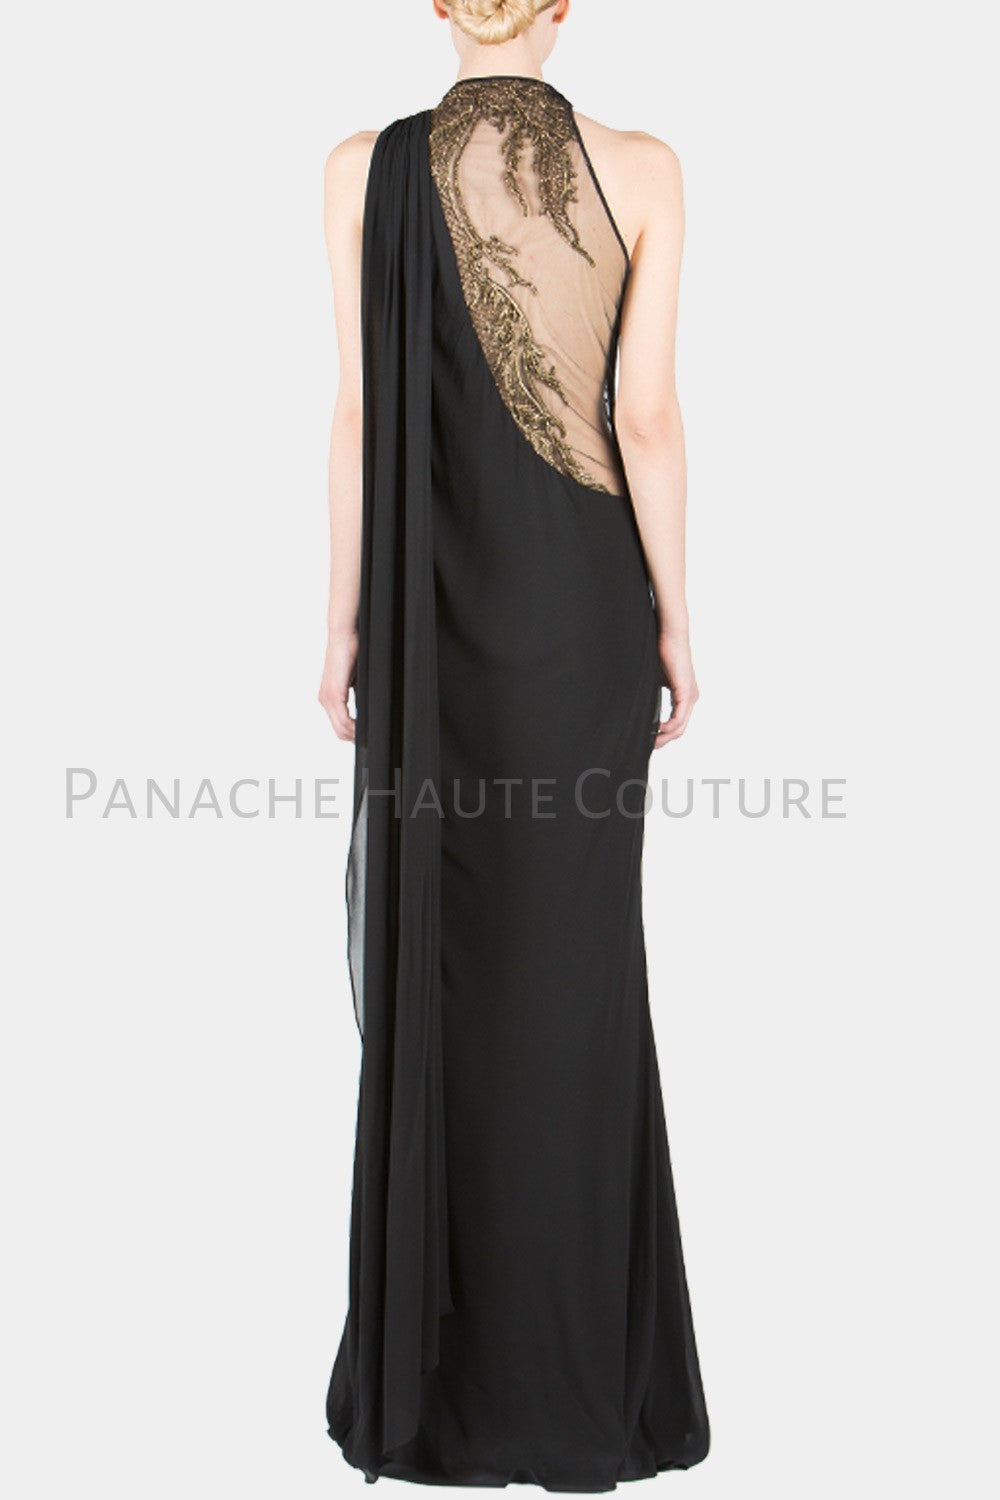 Black Color Designer Saree Gown Online – Panache Haute Couture